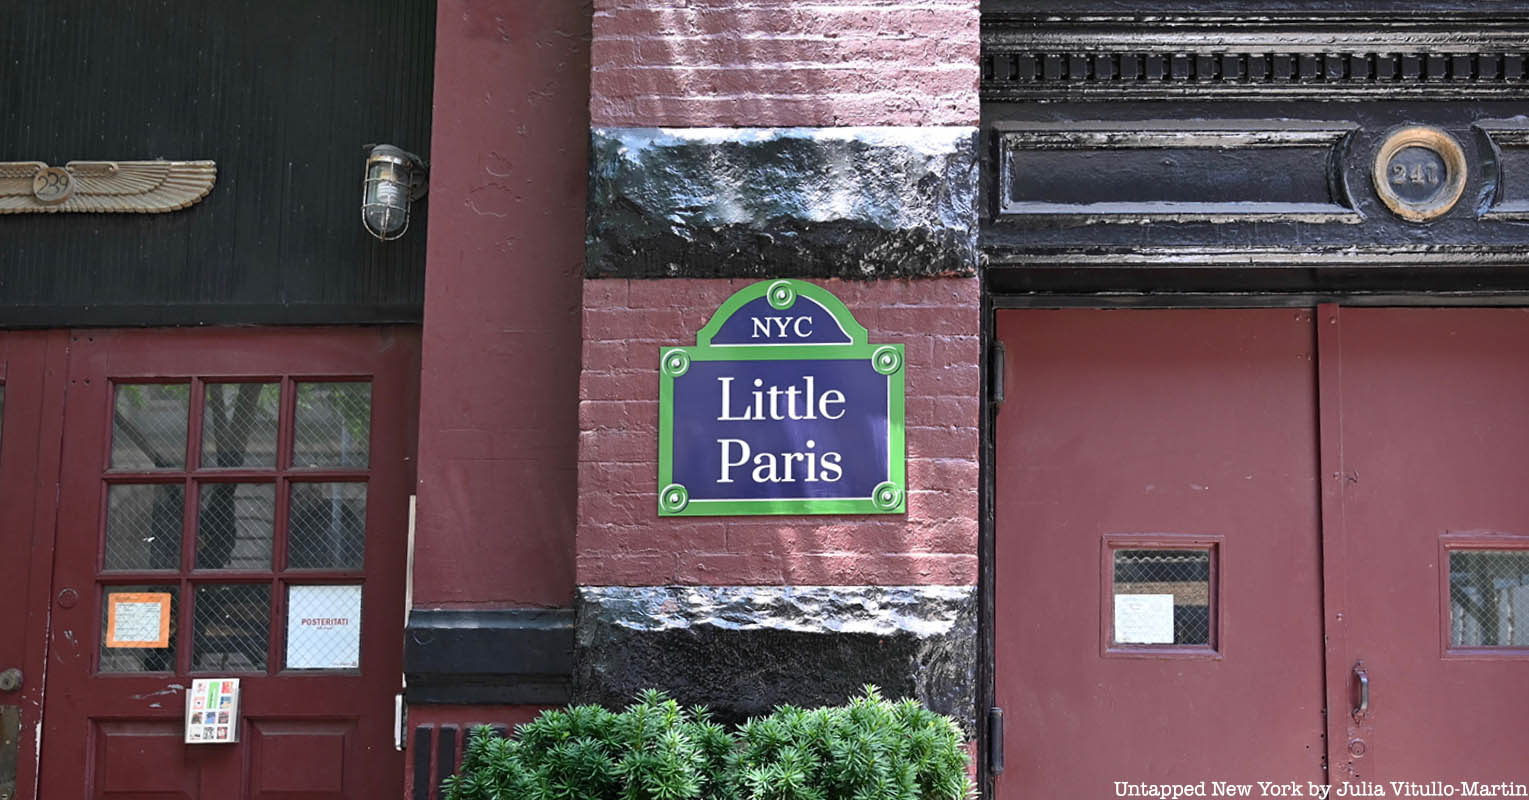 Little Paris Street sign